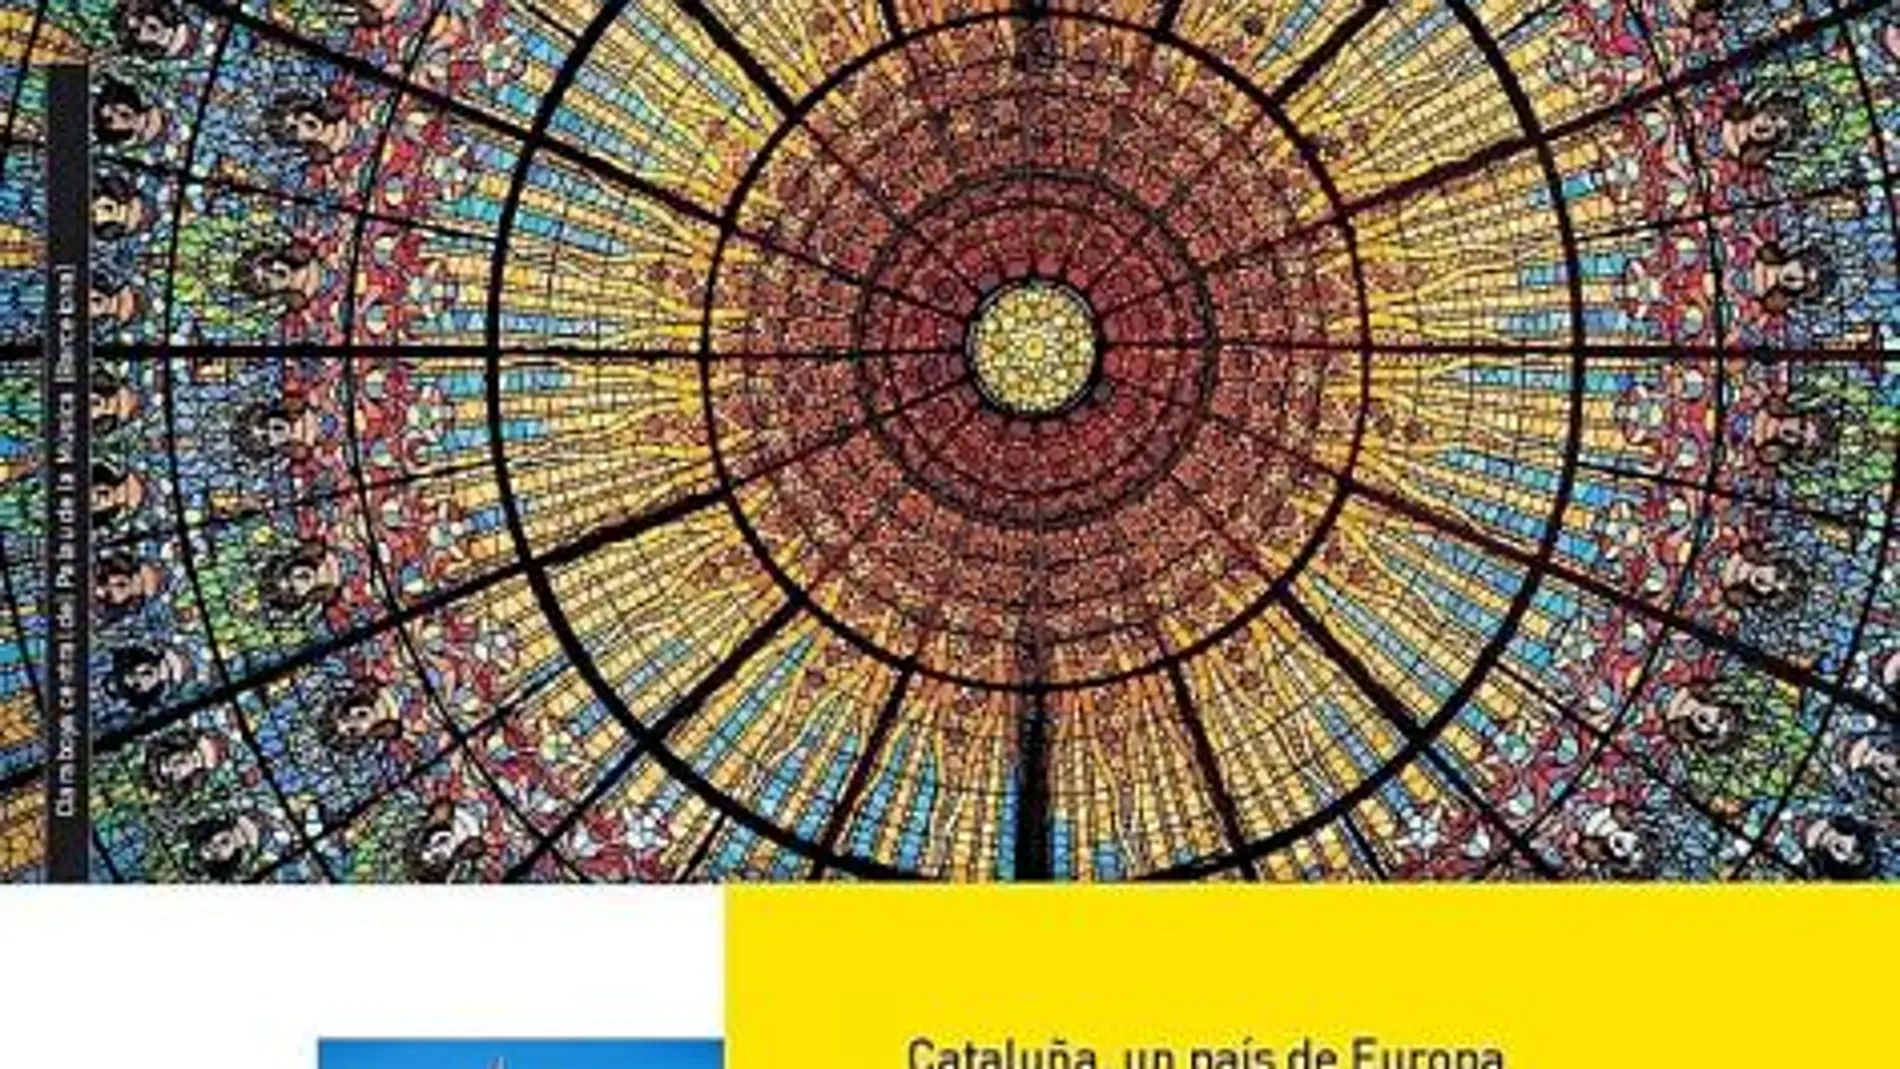 La publicación que presenta a Cataluña como país de Europa